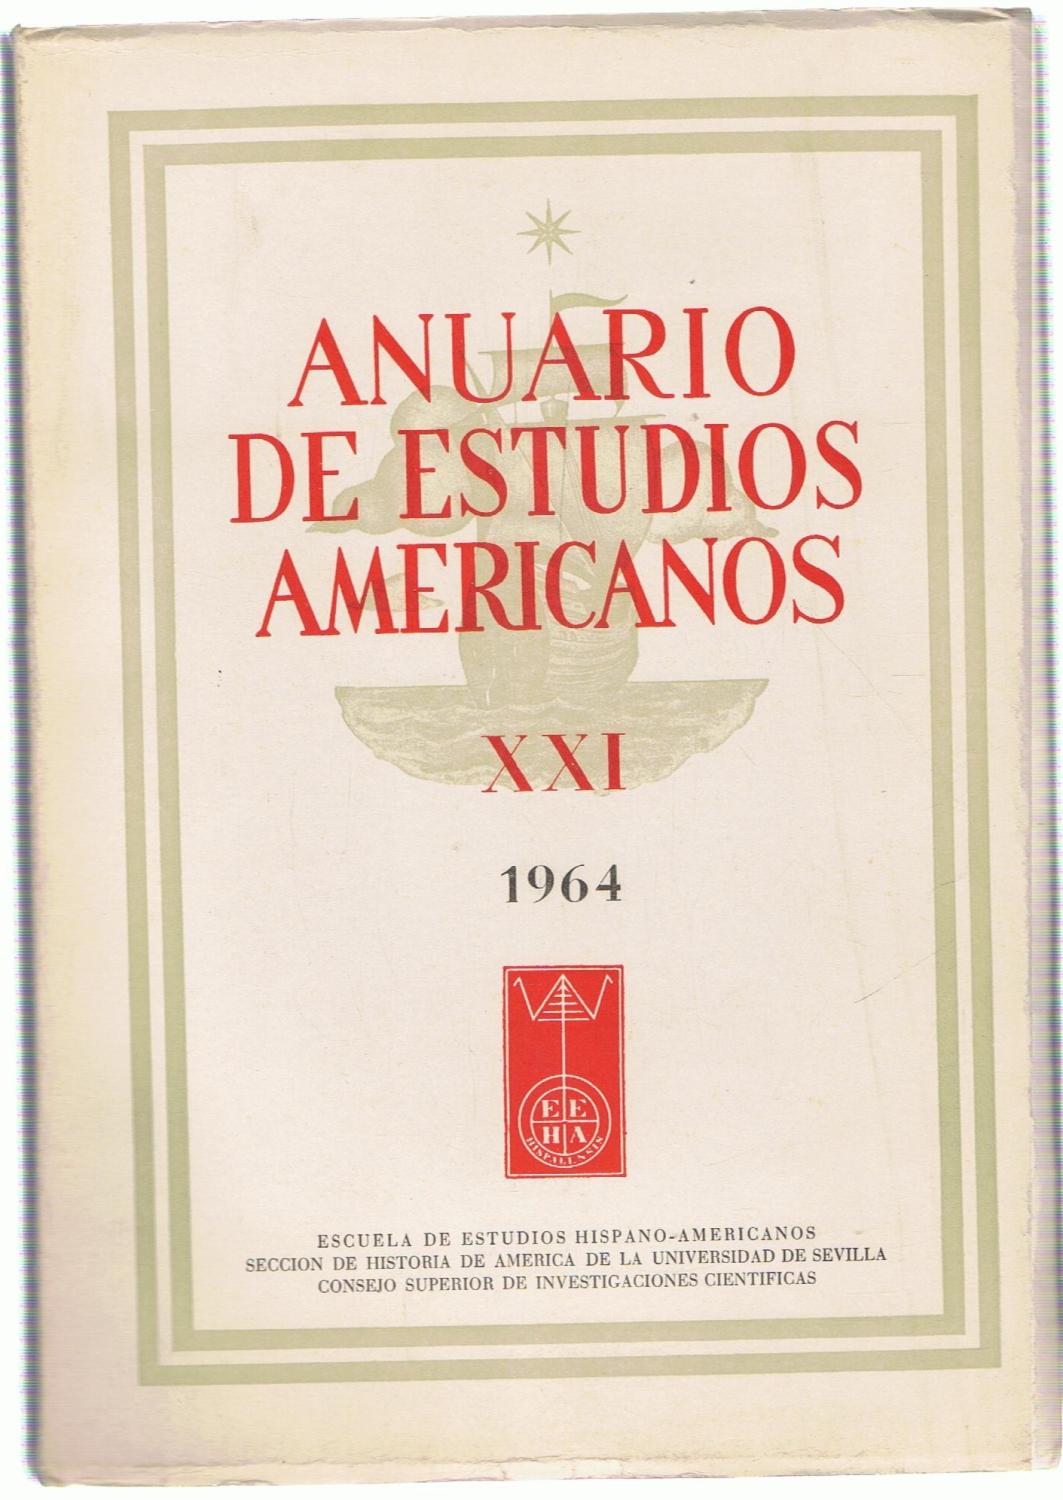 ANUARIO DE ESTUDIOS AMERICANOS. Tomo XXI. 1964 de AA.VV Librería